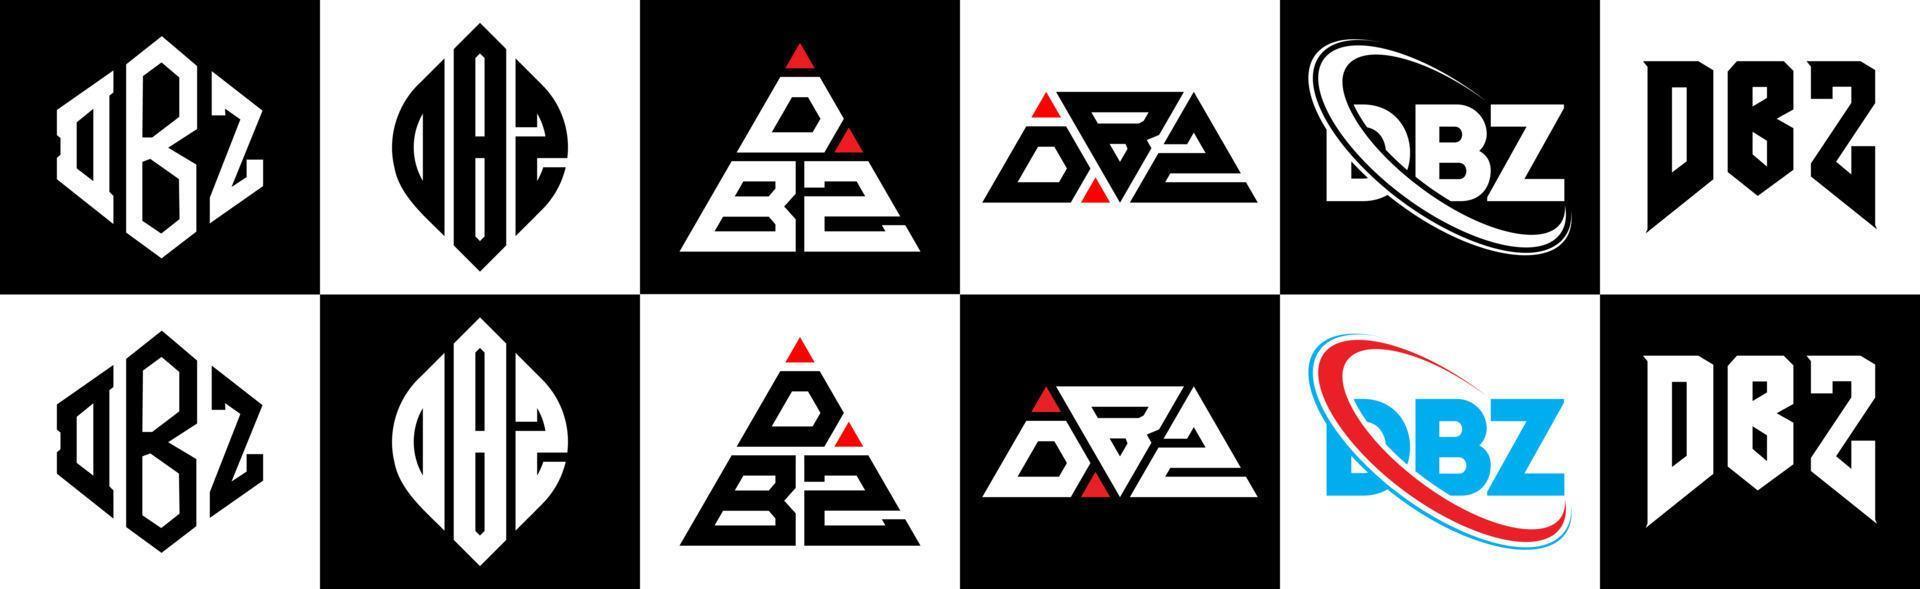 design de logotipo de letra dbz em seis estilo. polígono dbz, círculo, triângulo, hexágono, estilo plano e simples com logotipo de letra de variação de cor preto e branco definido em uma prancheta. dbz logotipo minimalista e clássico vetor